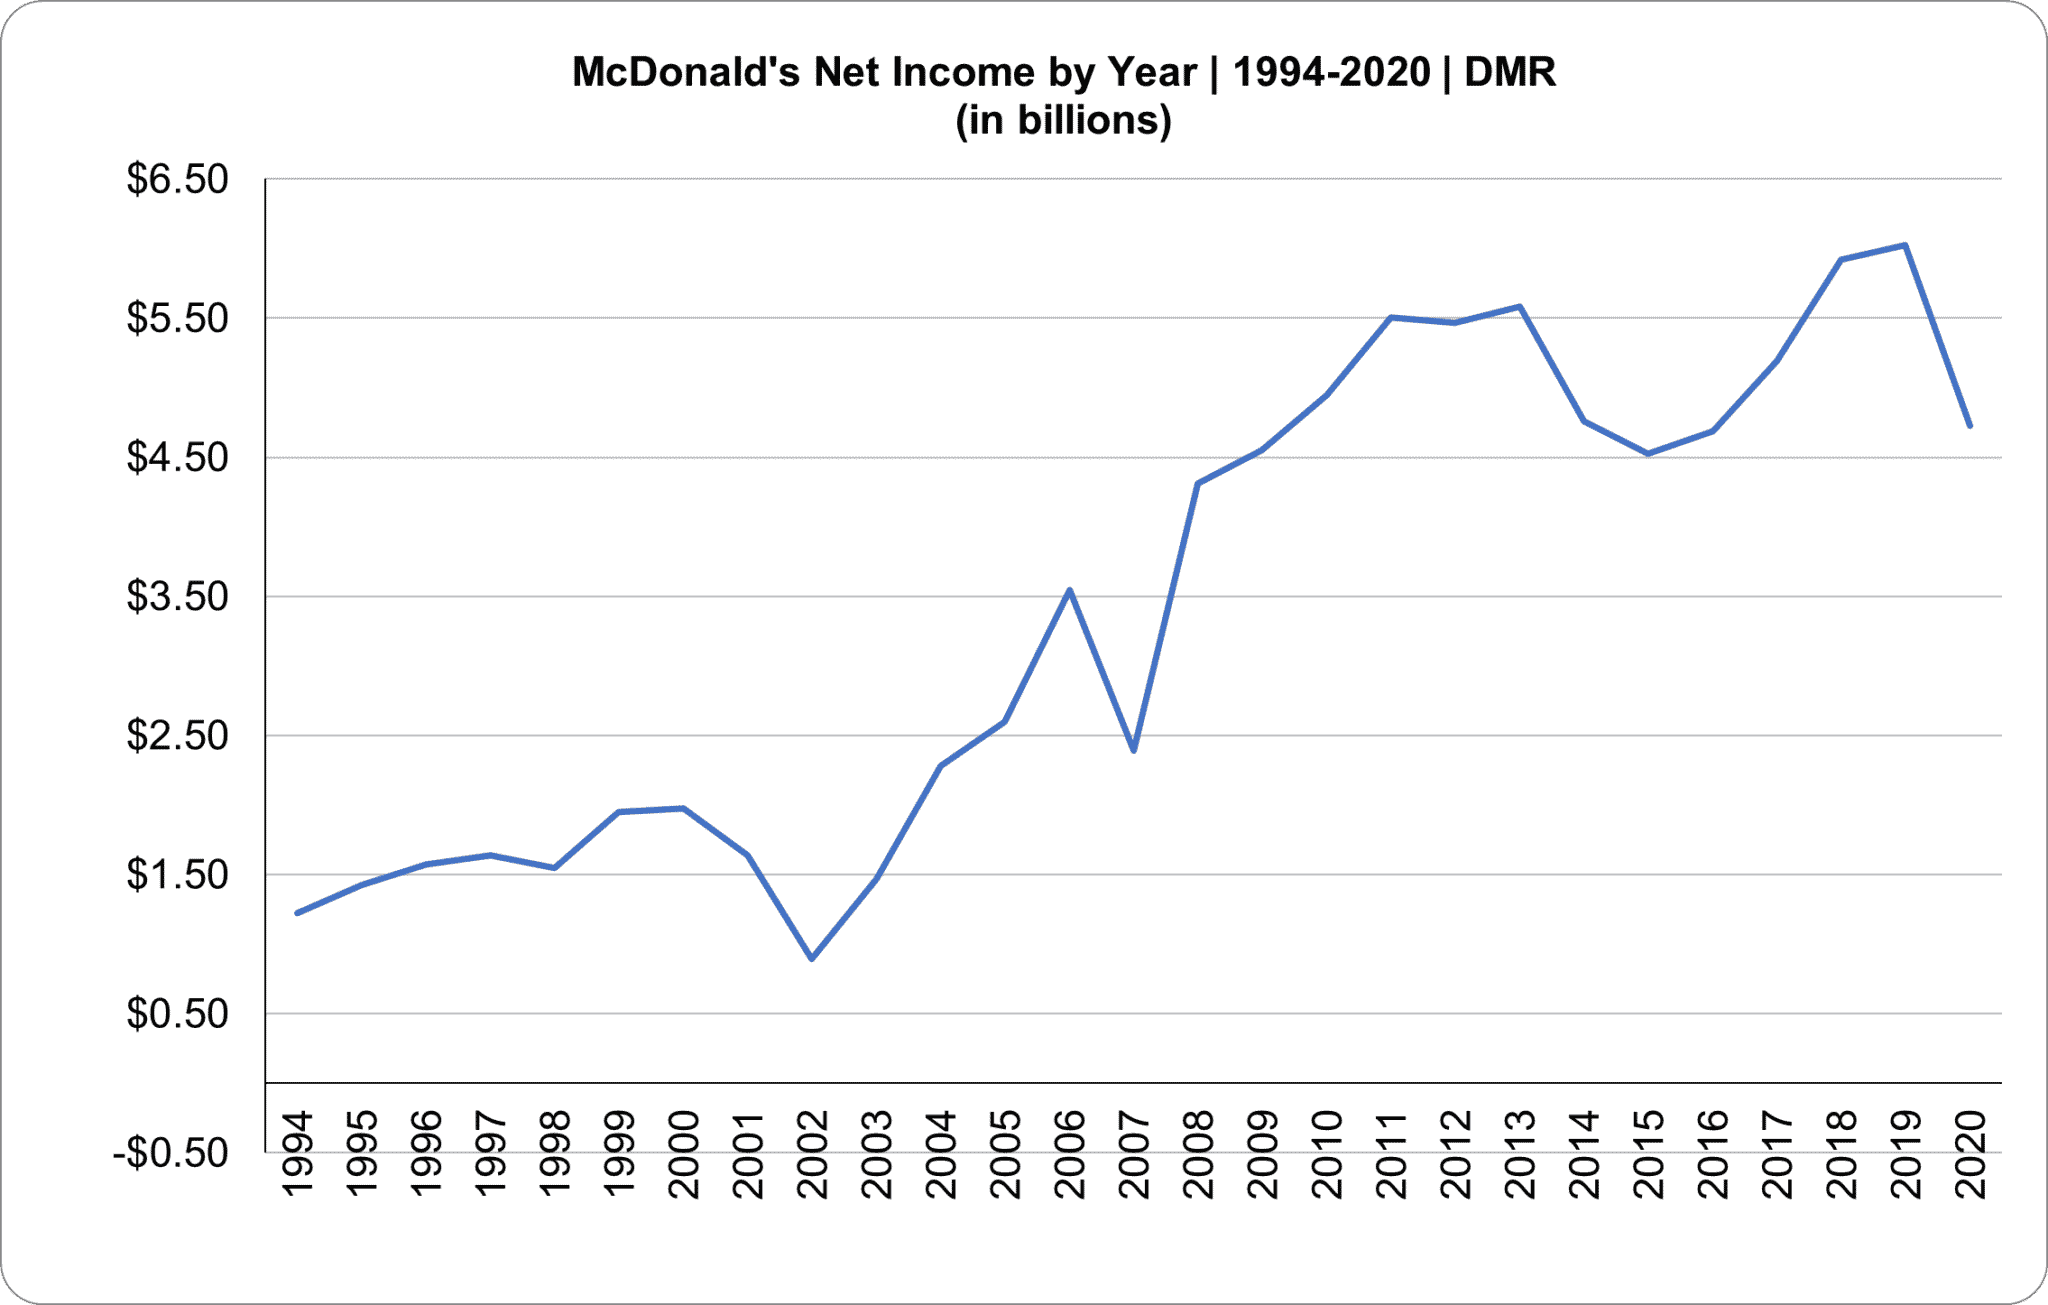 McDonald's annual Net Income